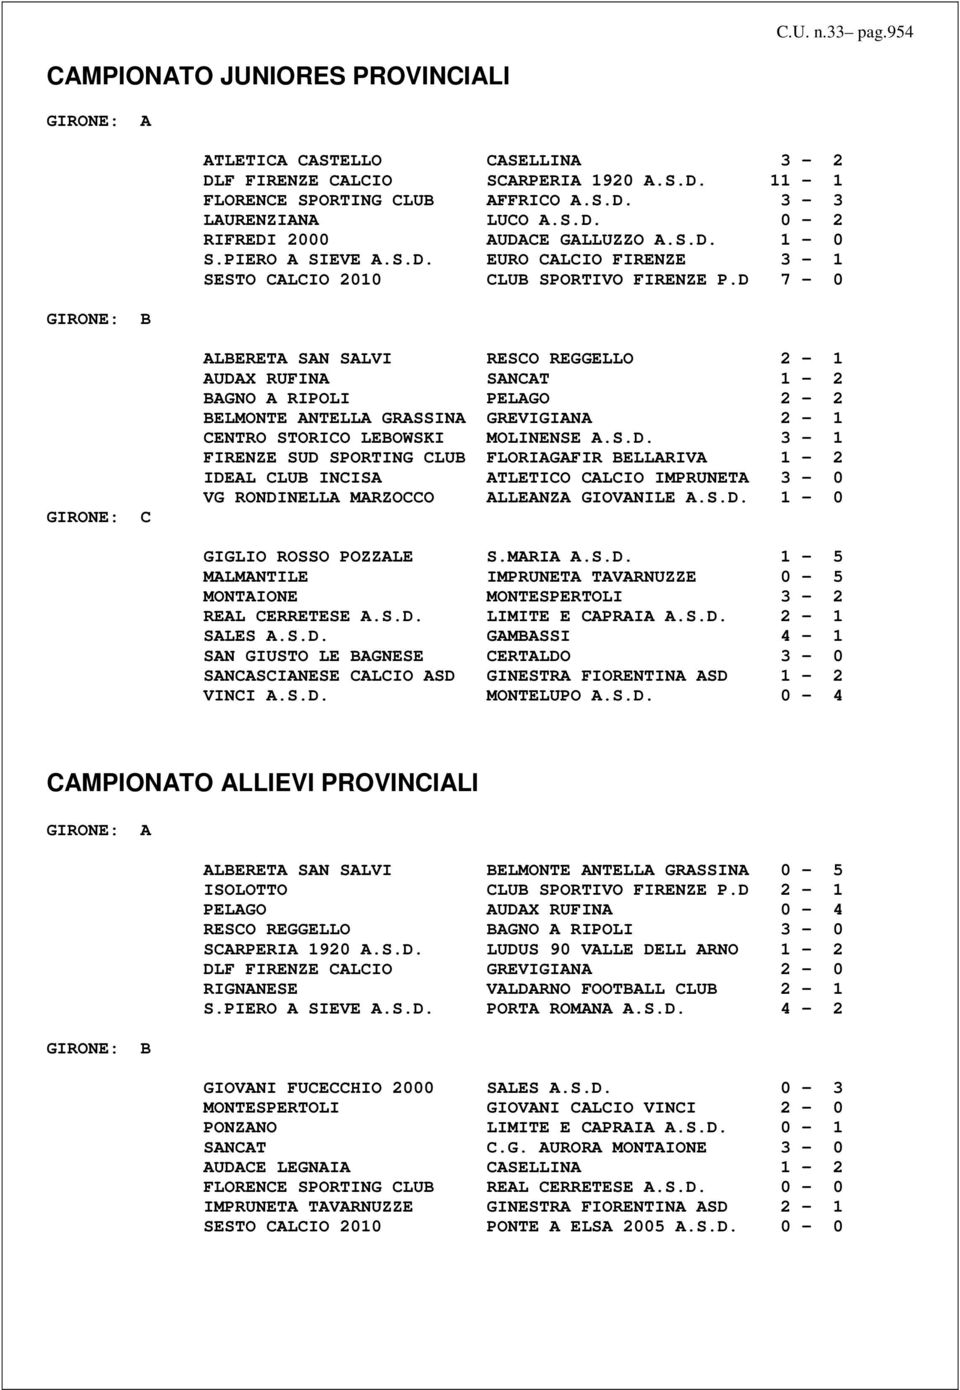 D 7-0 GIRONE: C ALBERETA SAN SALVI RESCO REGGELLO 2-1 AUDA RUFINA SANCAT 1-2 BAGNO A RIPOLI PELAGO 2-2 BELMONTE ANTELLA GRASSINA GREVIGIANA 2-1 CENTRO STORICO LEBOWSKI MOLINENSE A.S.D. 3-1 FIRENZE SUD SPORTING CLUB FLORIAGAFIR BELLARIVA 1-2 IDEAL CLUB INCISA ATLETICO CALCIO IMPRUNETA 3-0 VG RONDINELLA MARZOCCO ALLEANZA GIOVANILE A.